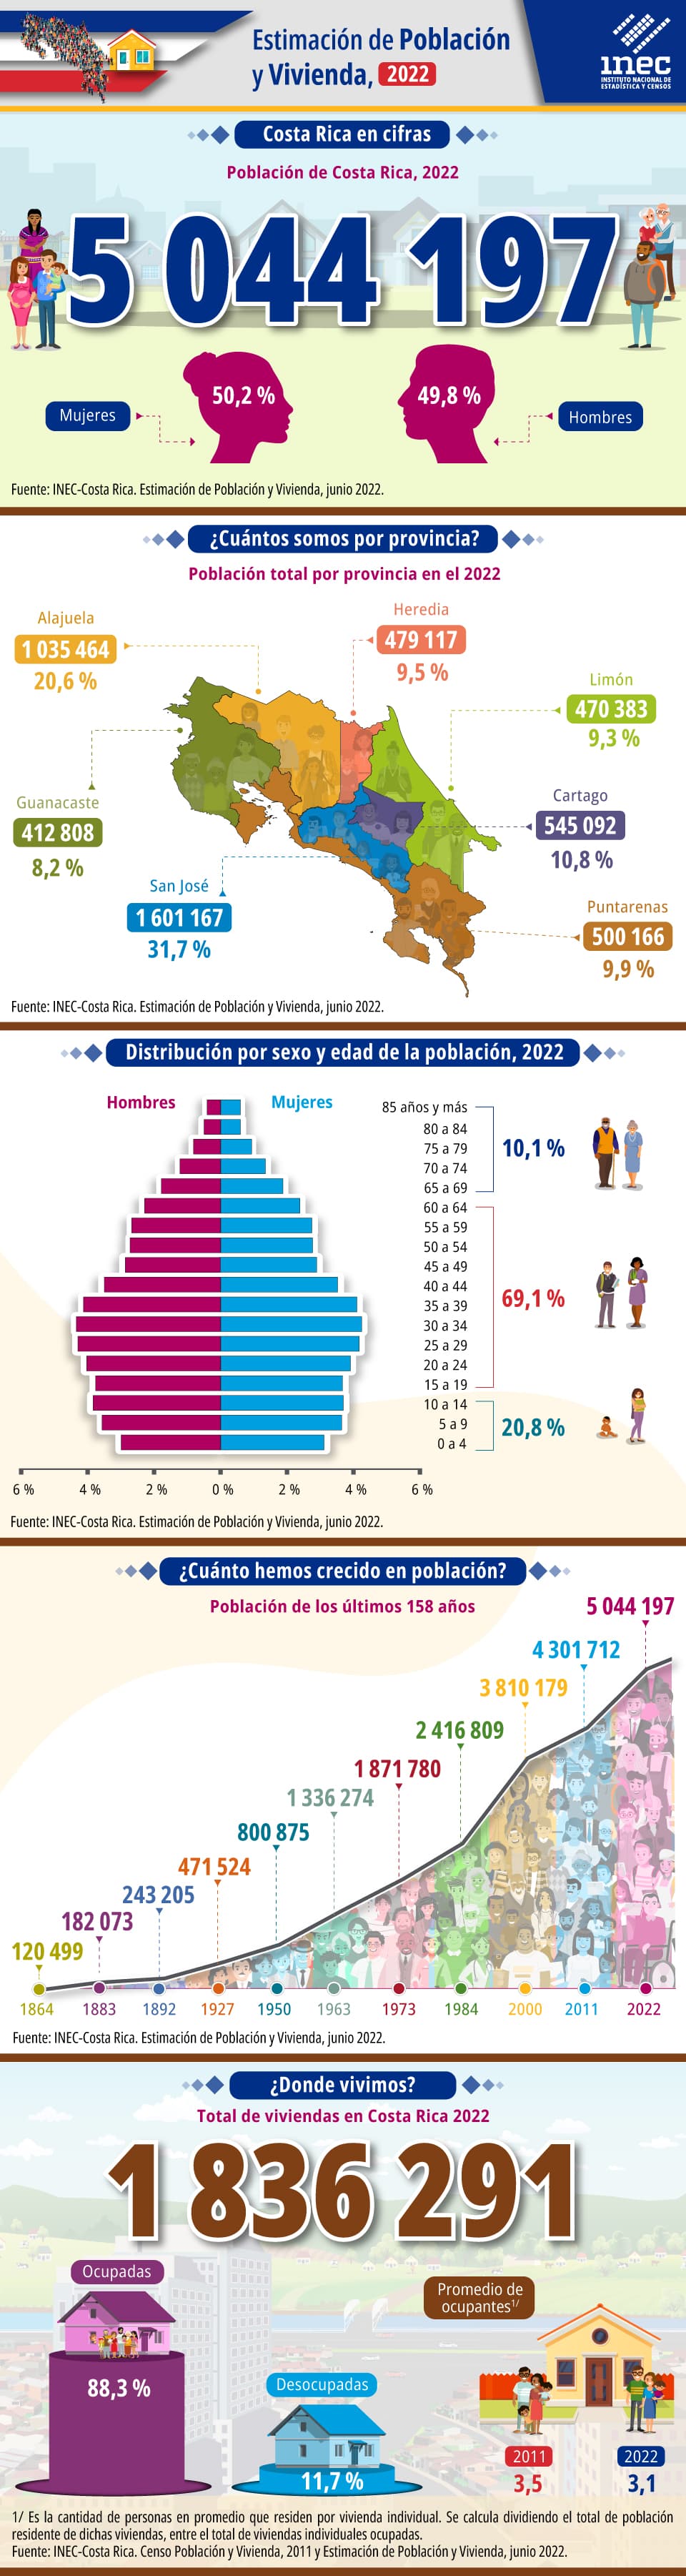 Infografía. Estimación de Población y Vivienda 2022. Costa Rica.